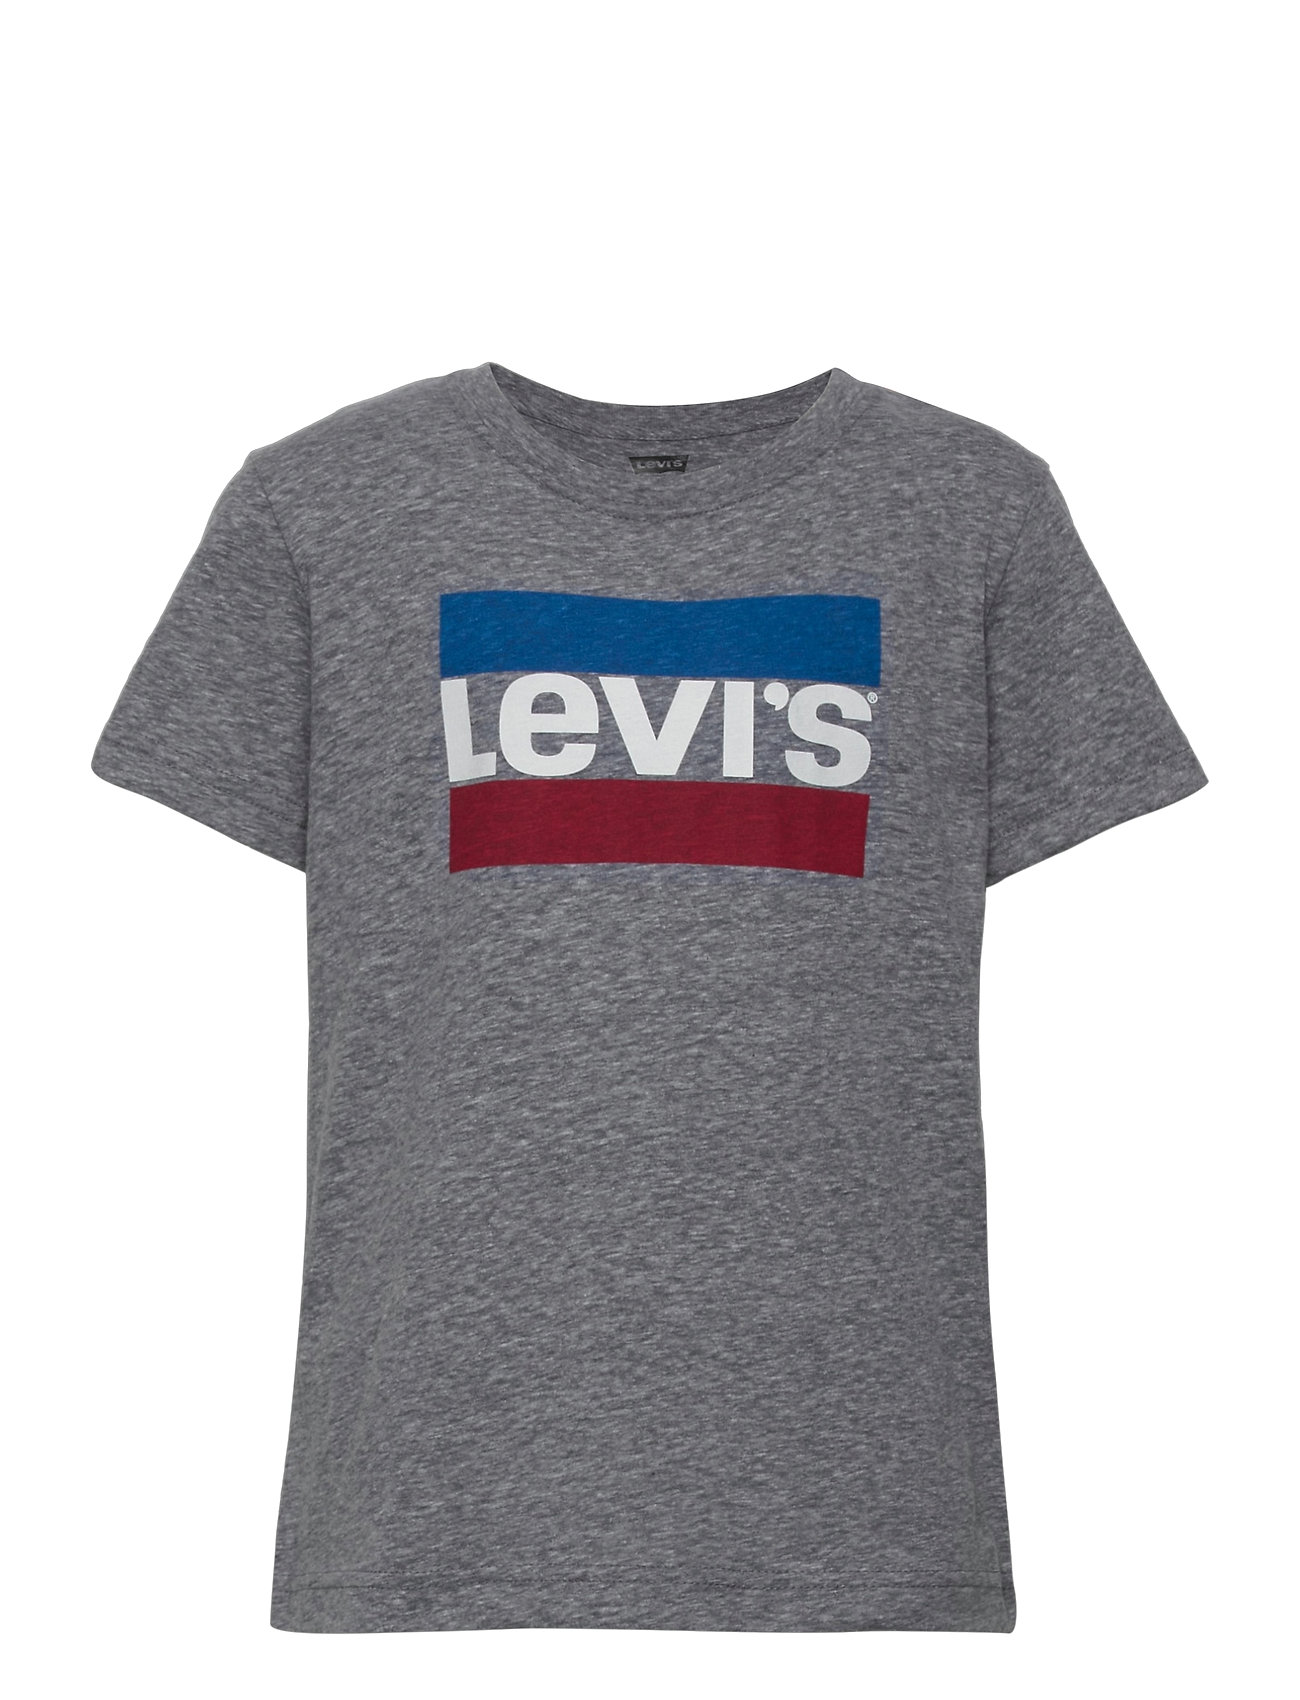 levis sportswear dress